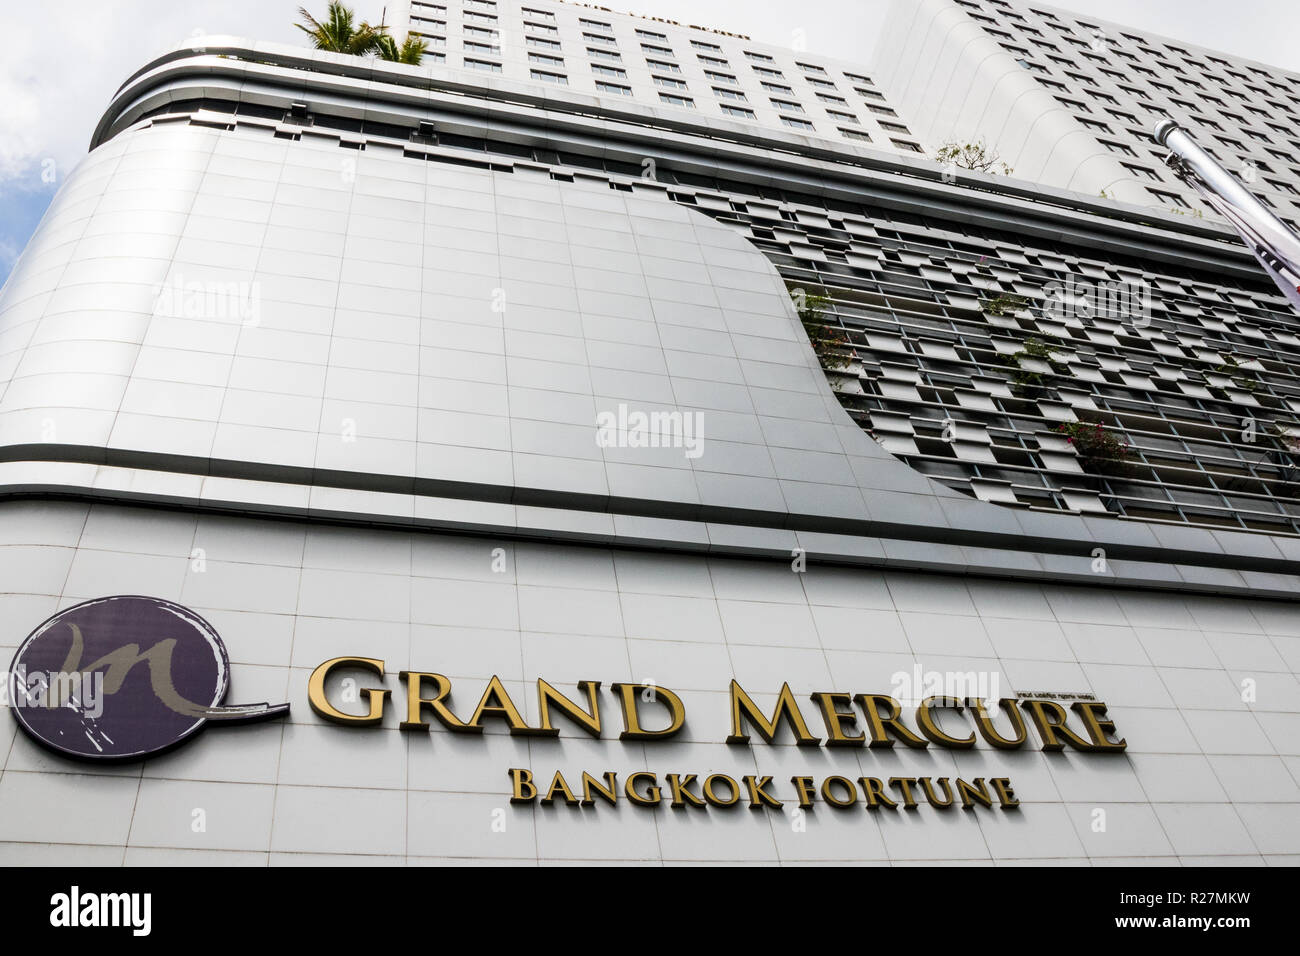 Bangkok, Thaïlande - 5 octobre 2018 : Le Grand Mercure Fortune Bangkok hotel. L'hôtel fait partie du groupe Accor. Banque D'Images